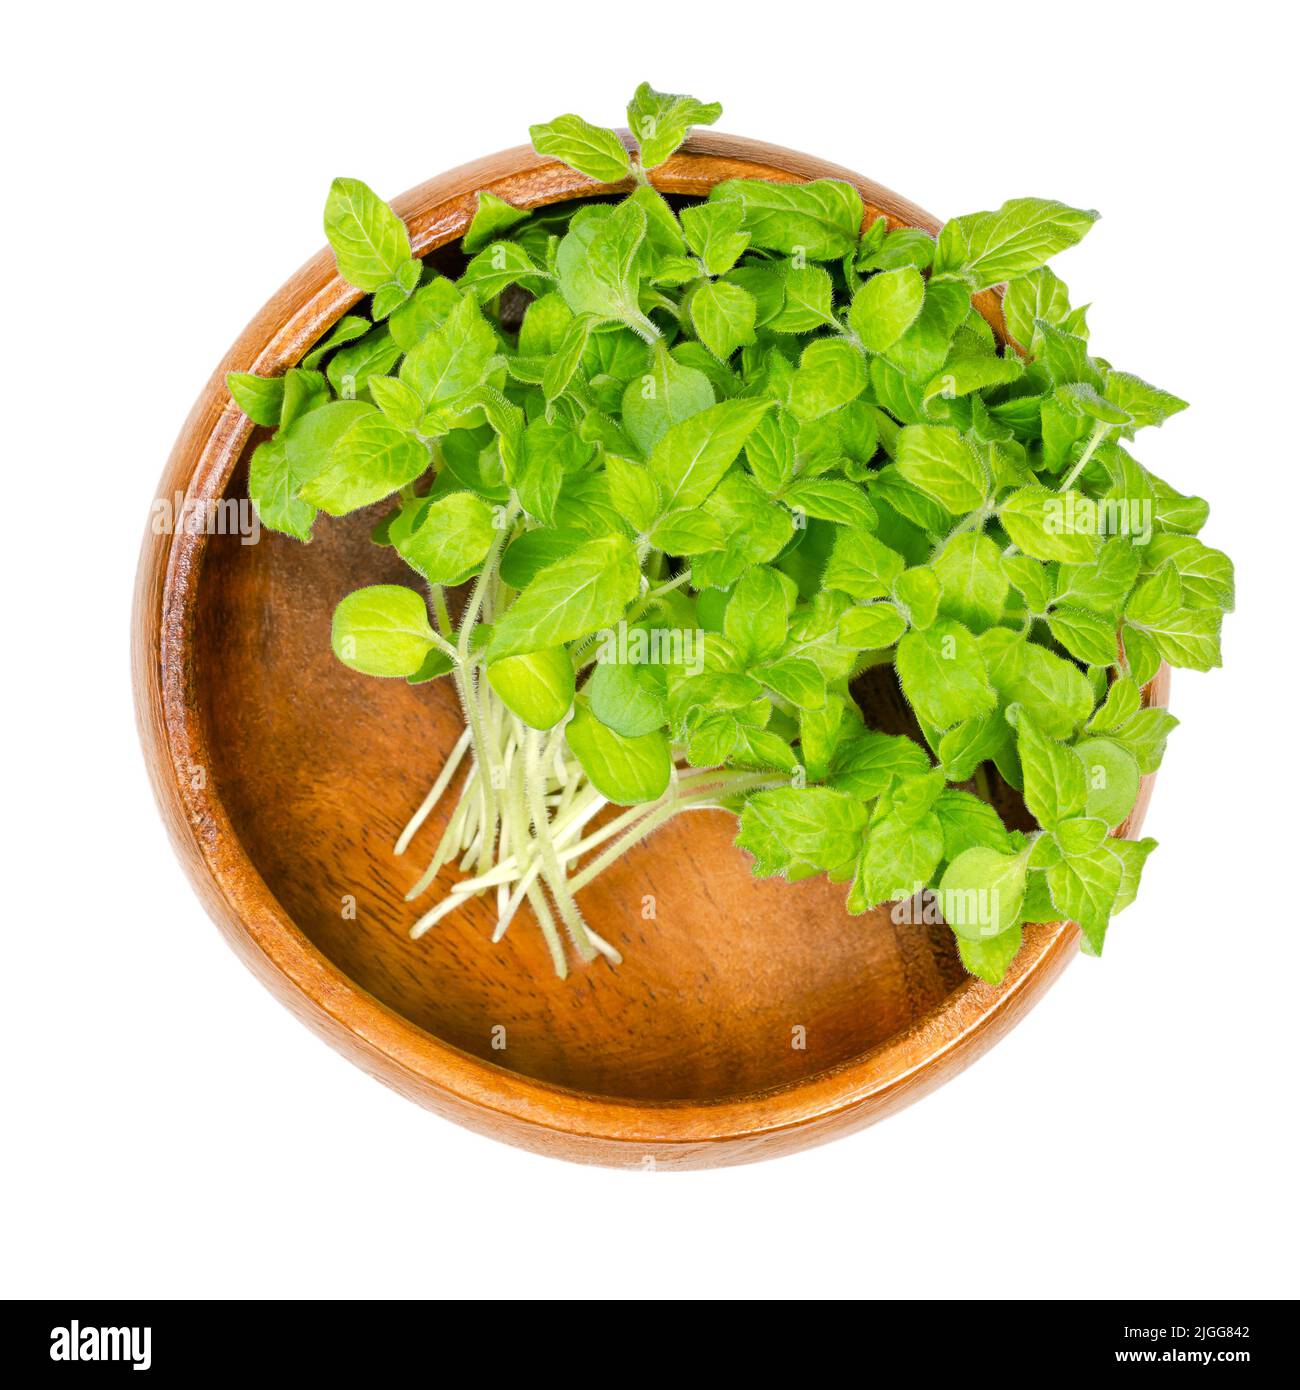 Sésame ou benne microvert, dans un bol en bois. Prêt à manger de jeunes plantes fraîches et vertes de Sesamum, pousses légèrement amères et saines. Banque D'Images